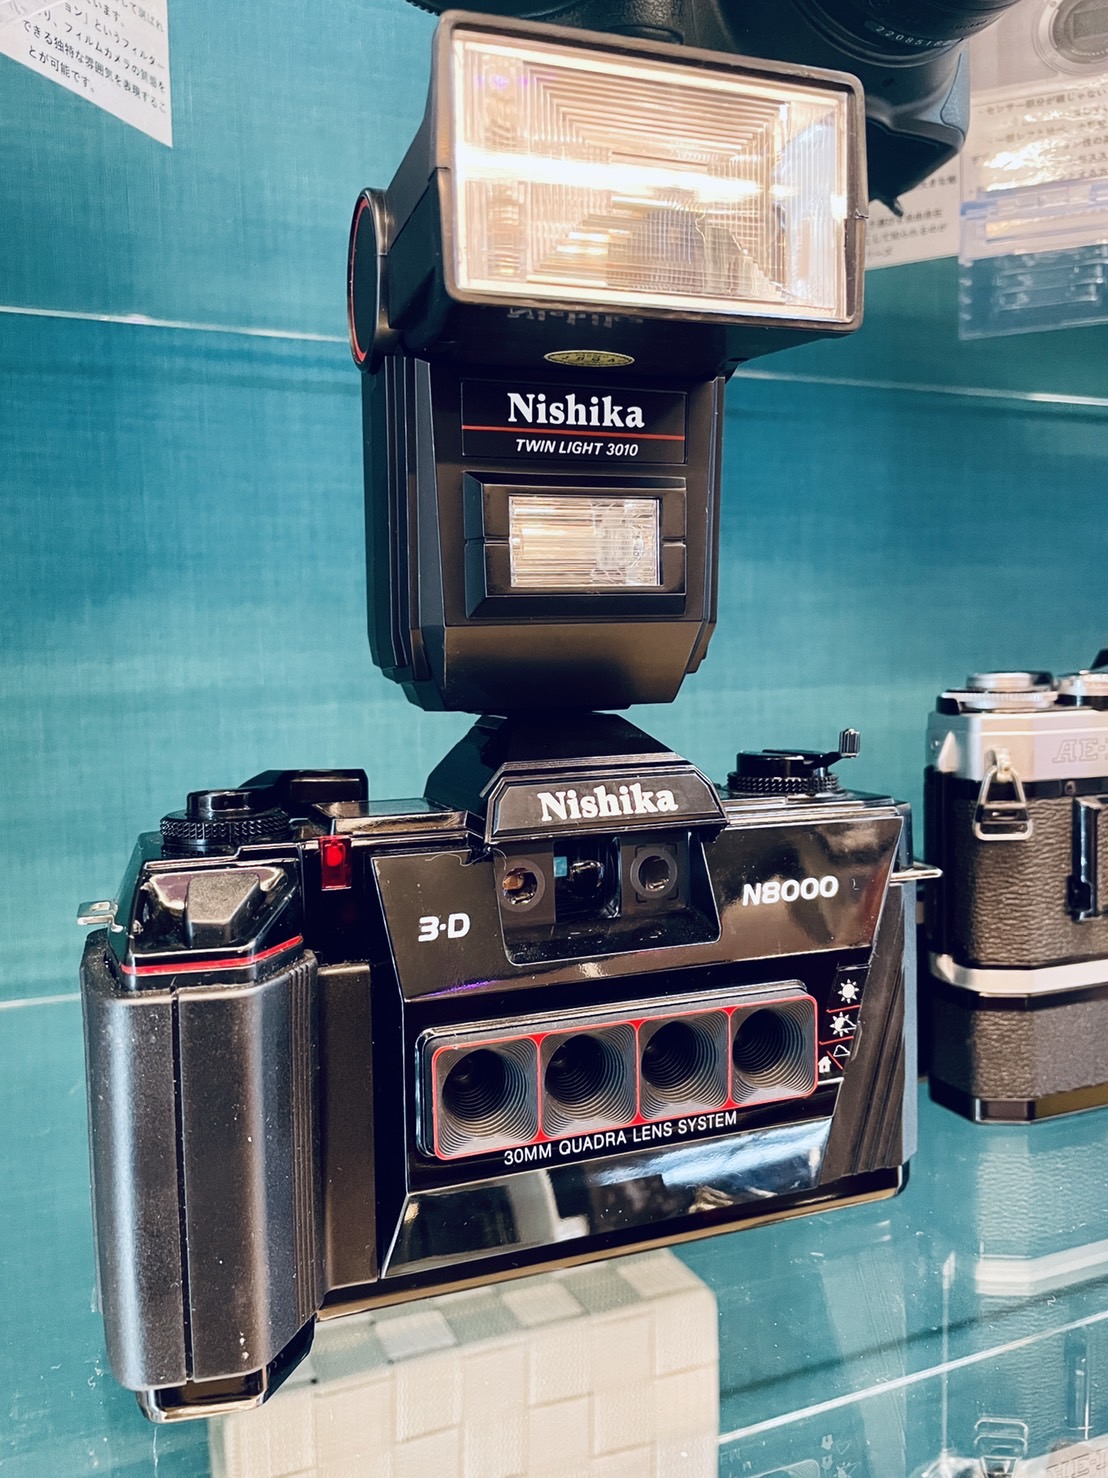 Nishika 4眼ステレオフィルムカメラ N8000 買取させていただきました 